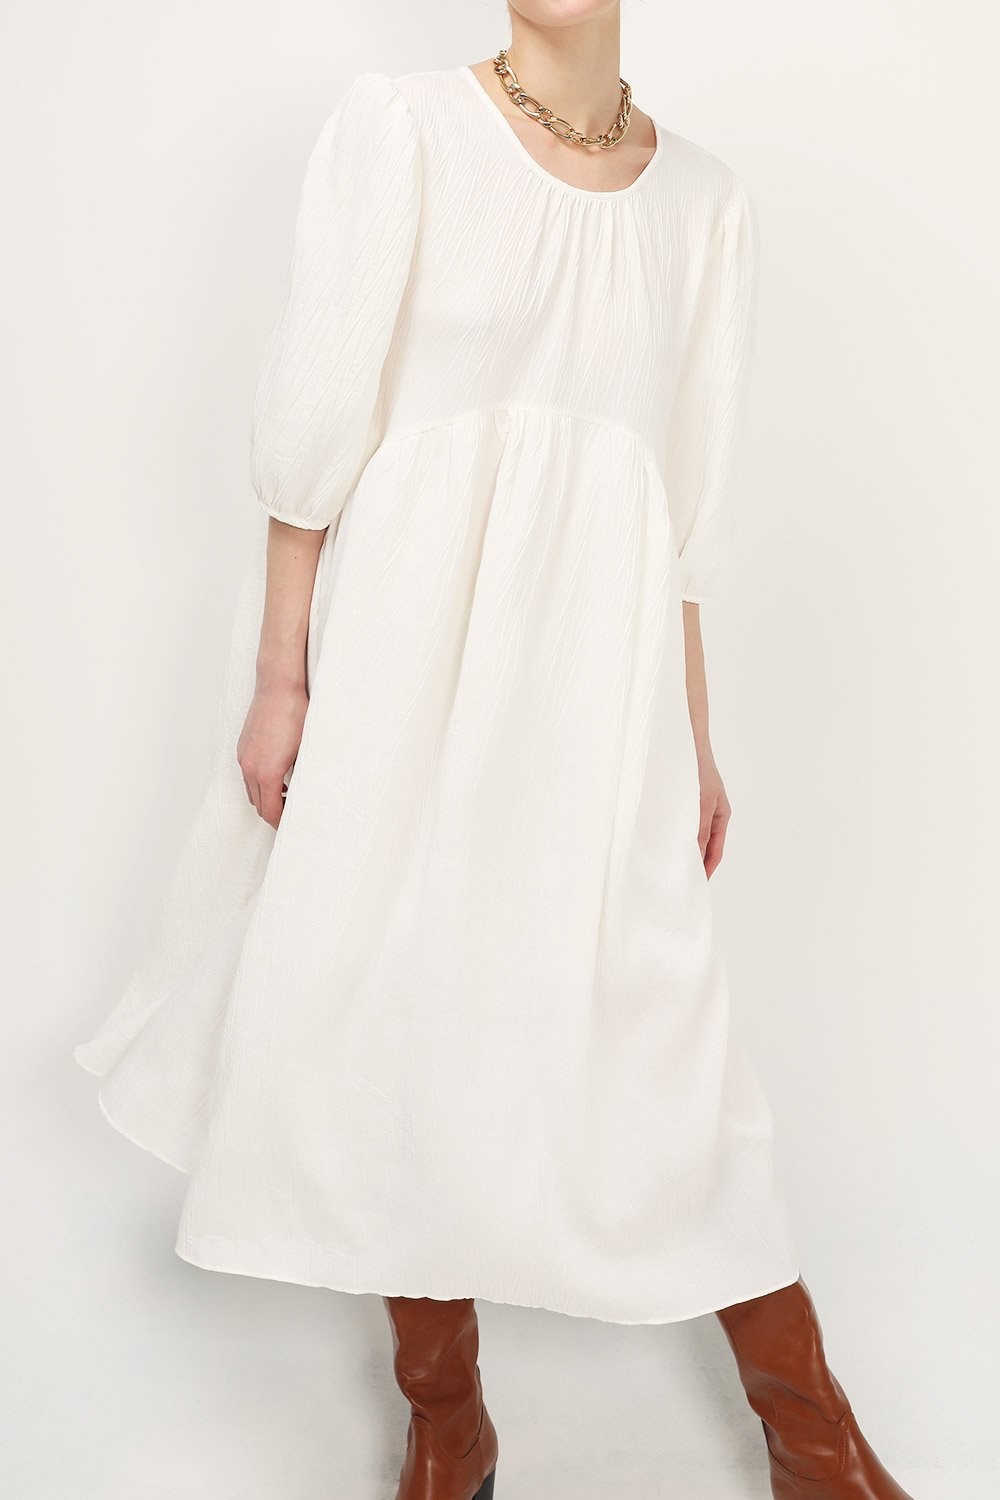 hvite kjoler 4